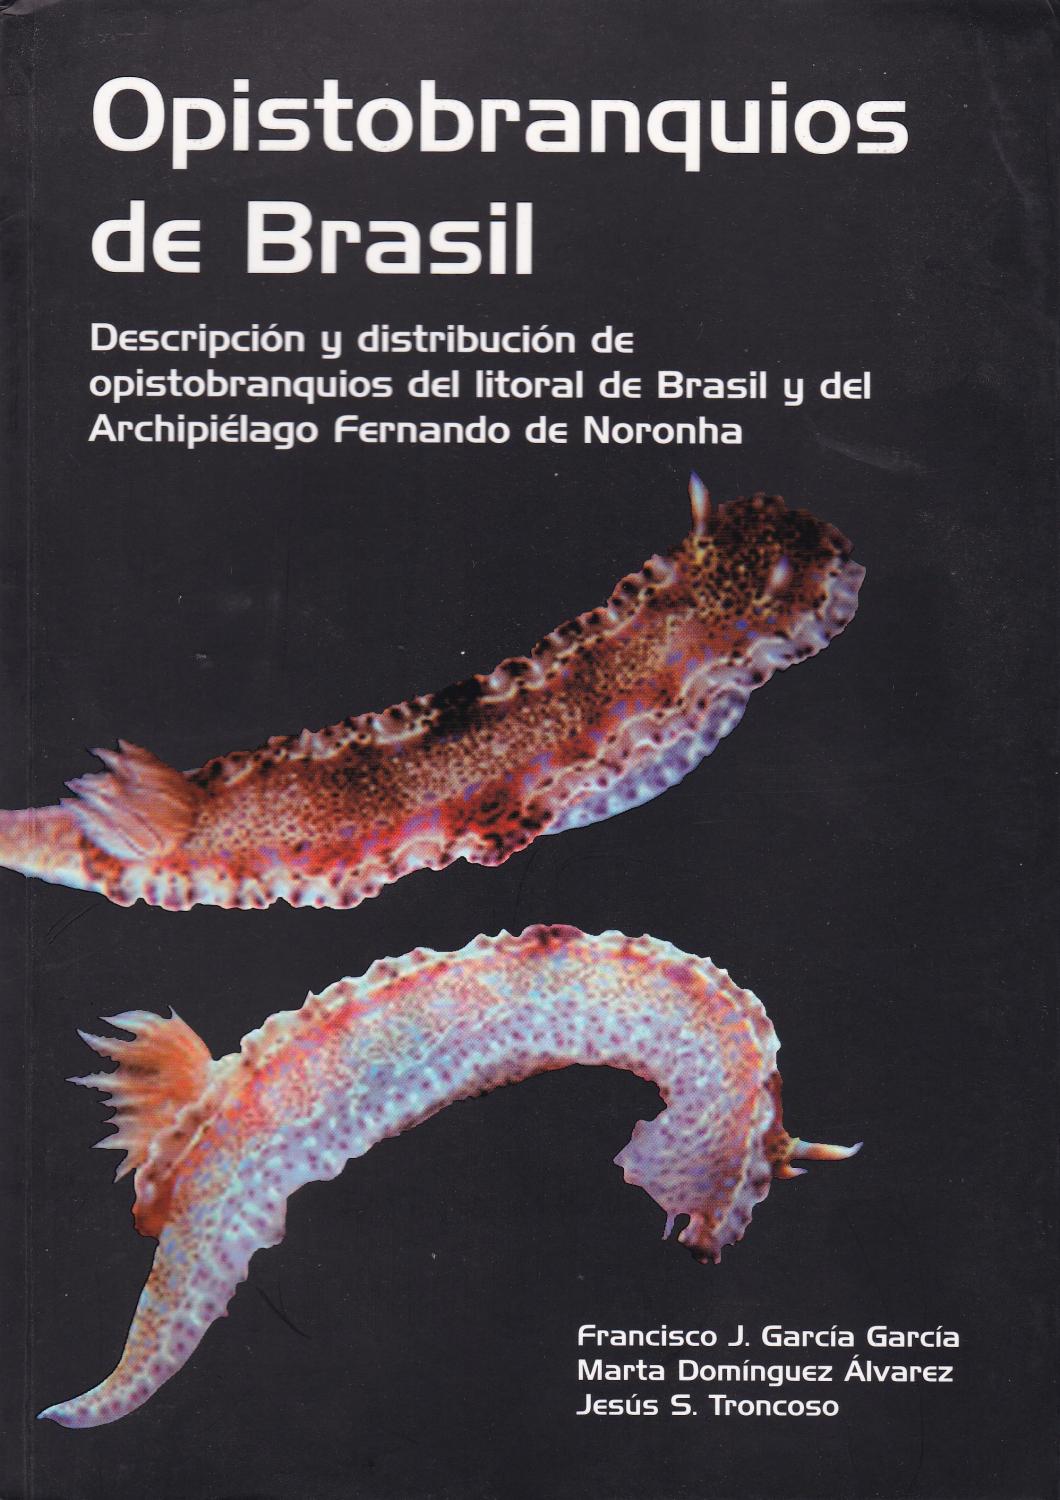 Imagen de portada del libro Opistobranquios de Brasil